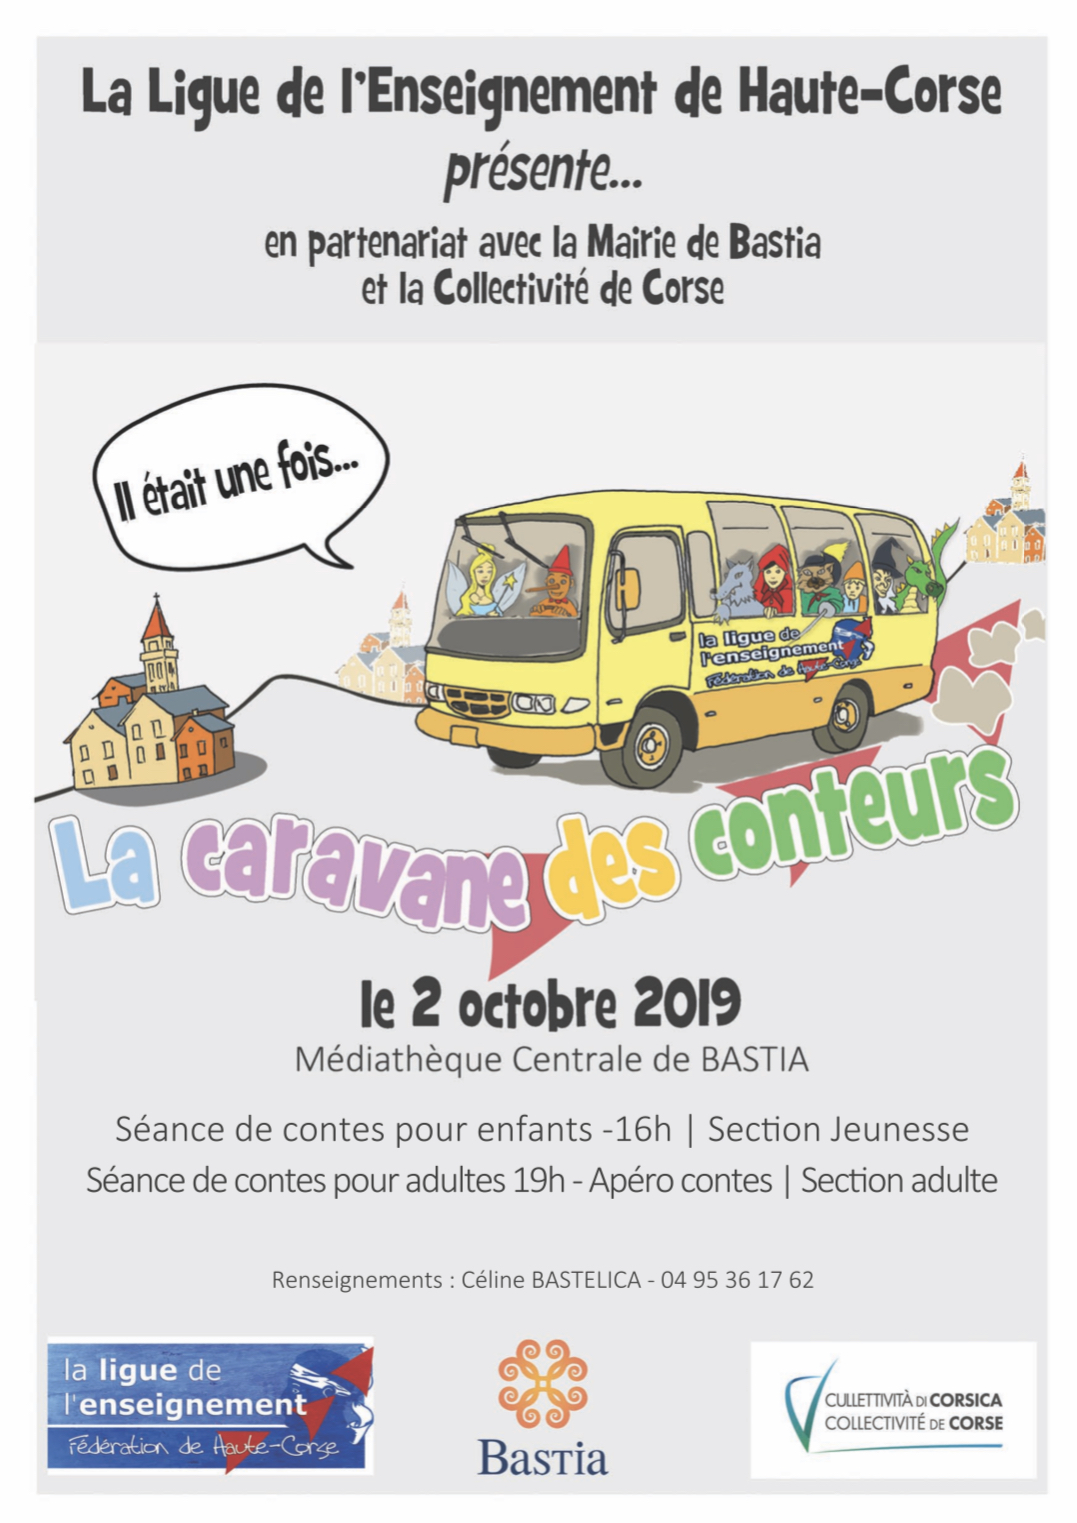 La caravane des conteurs fait halte à Bastia le 2 octobre prochain